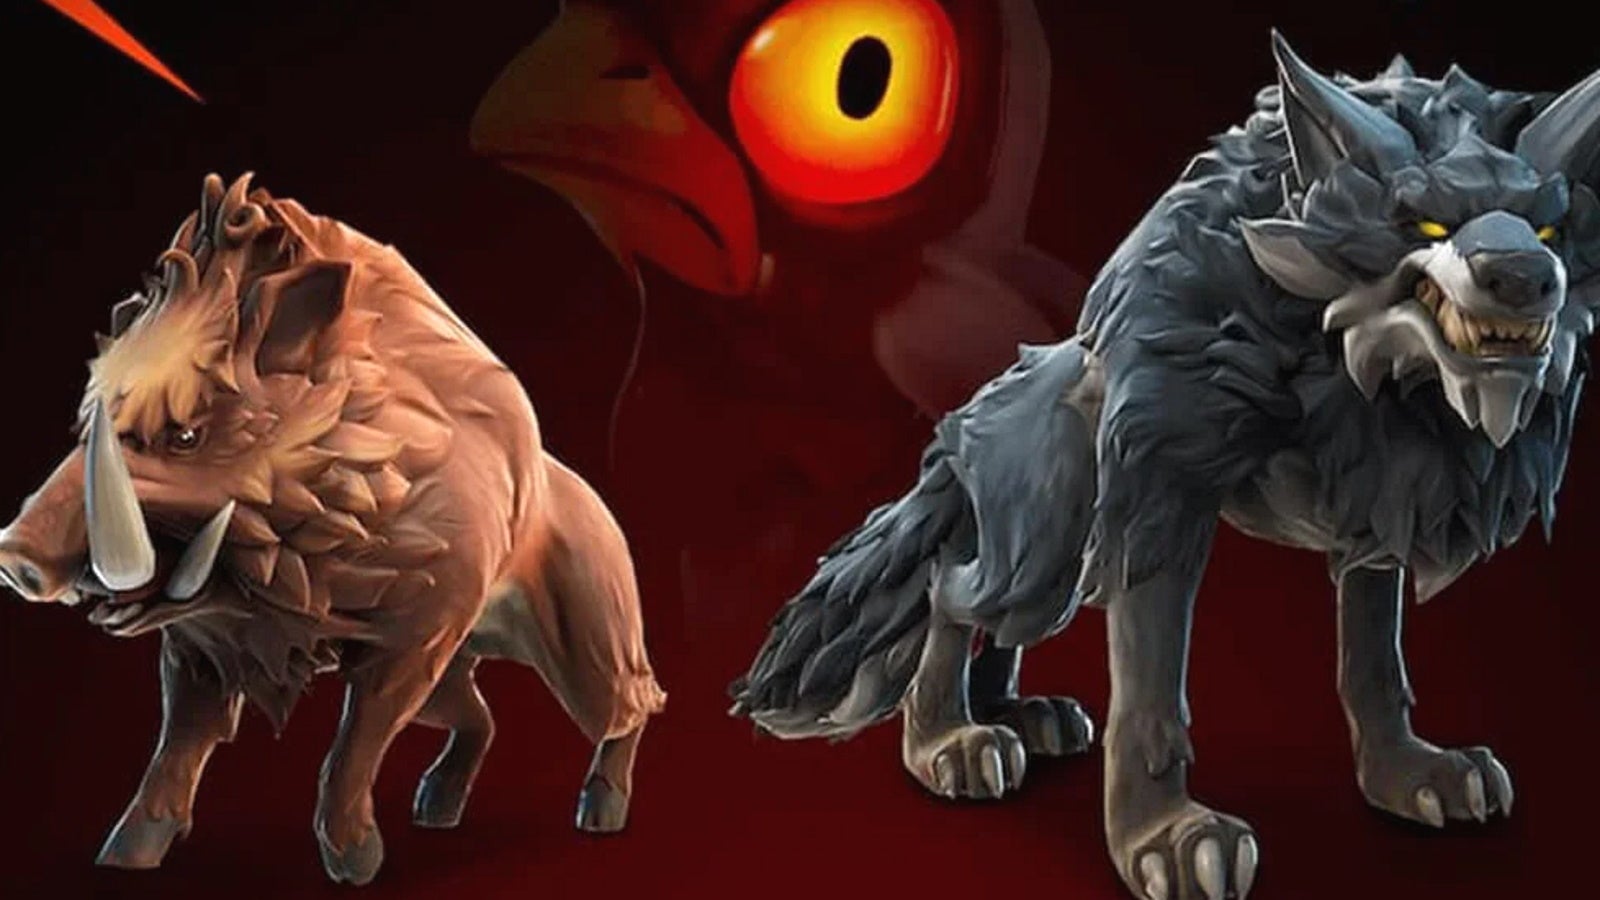 Afbeeldingen van Fortnite animals uitgelegd: wolven, zwijnen, kippen, kraaien en kikkers in Fortnite locaties